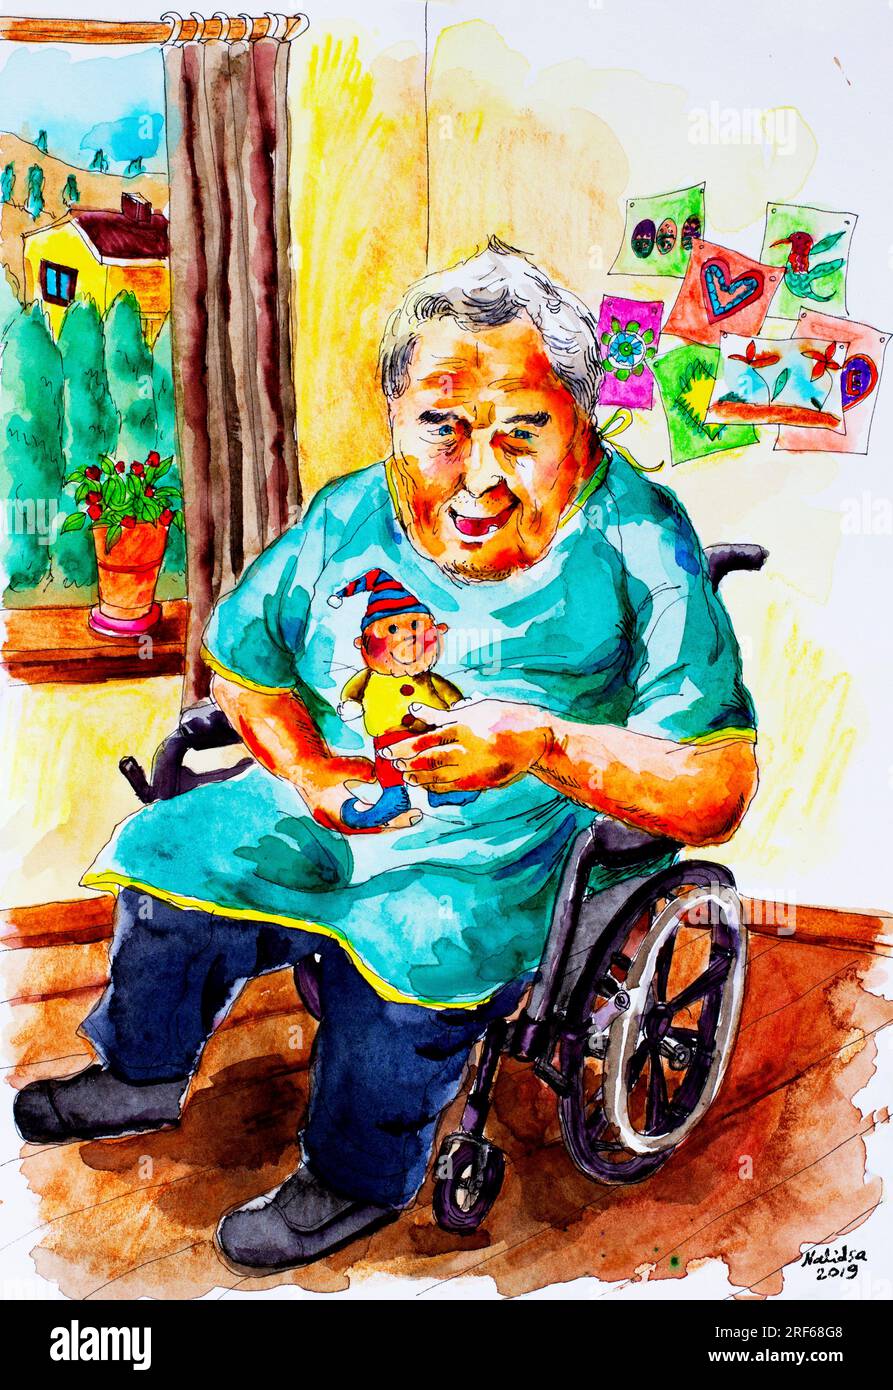 Un anziano in pensione felice uomo anziano con sindrome di Down e demenza disturbo mentale disabilità seduto su una sedia a rotelle attrezzature mediche in Foto Stock